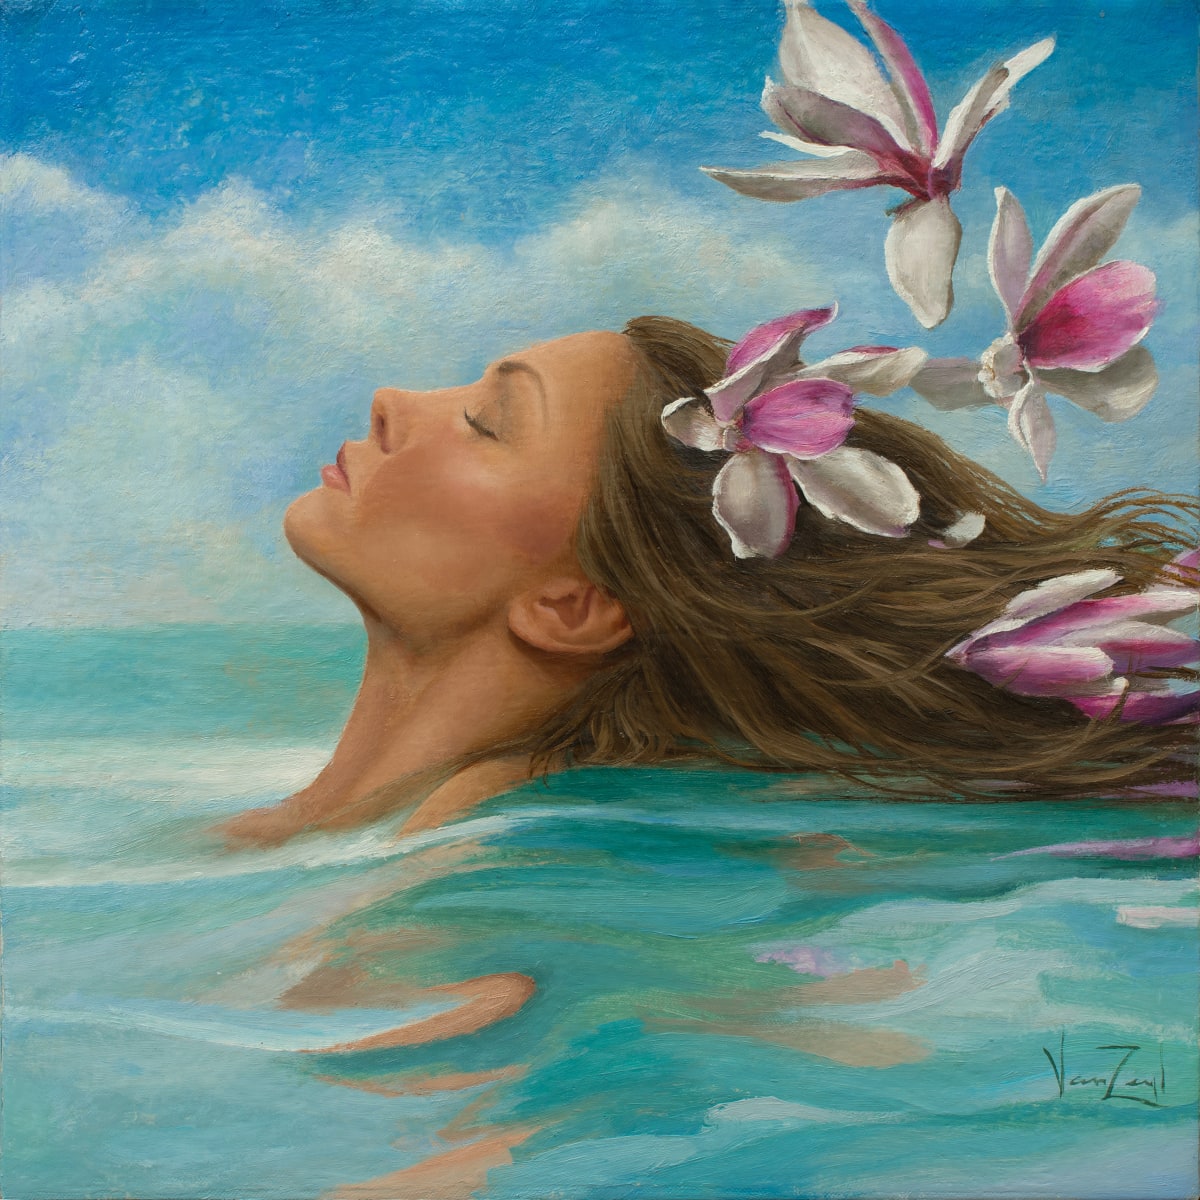 Magnolia Swim by Michael Van Zeyl 